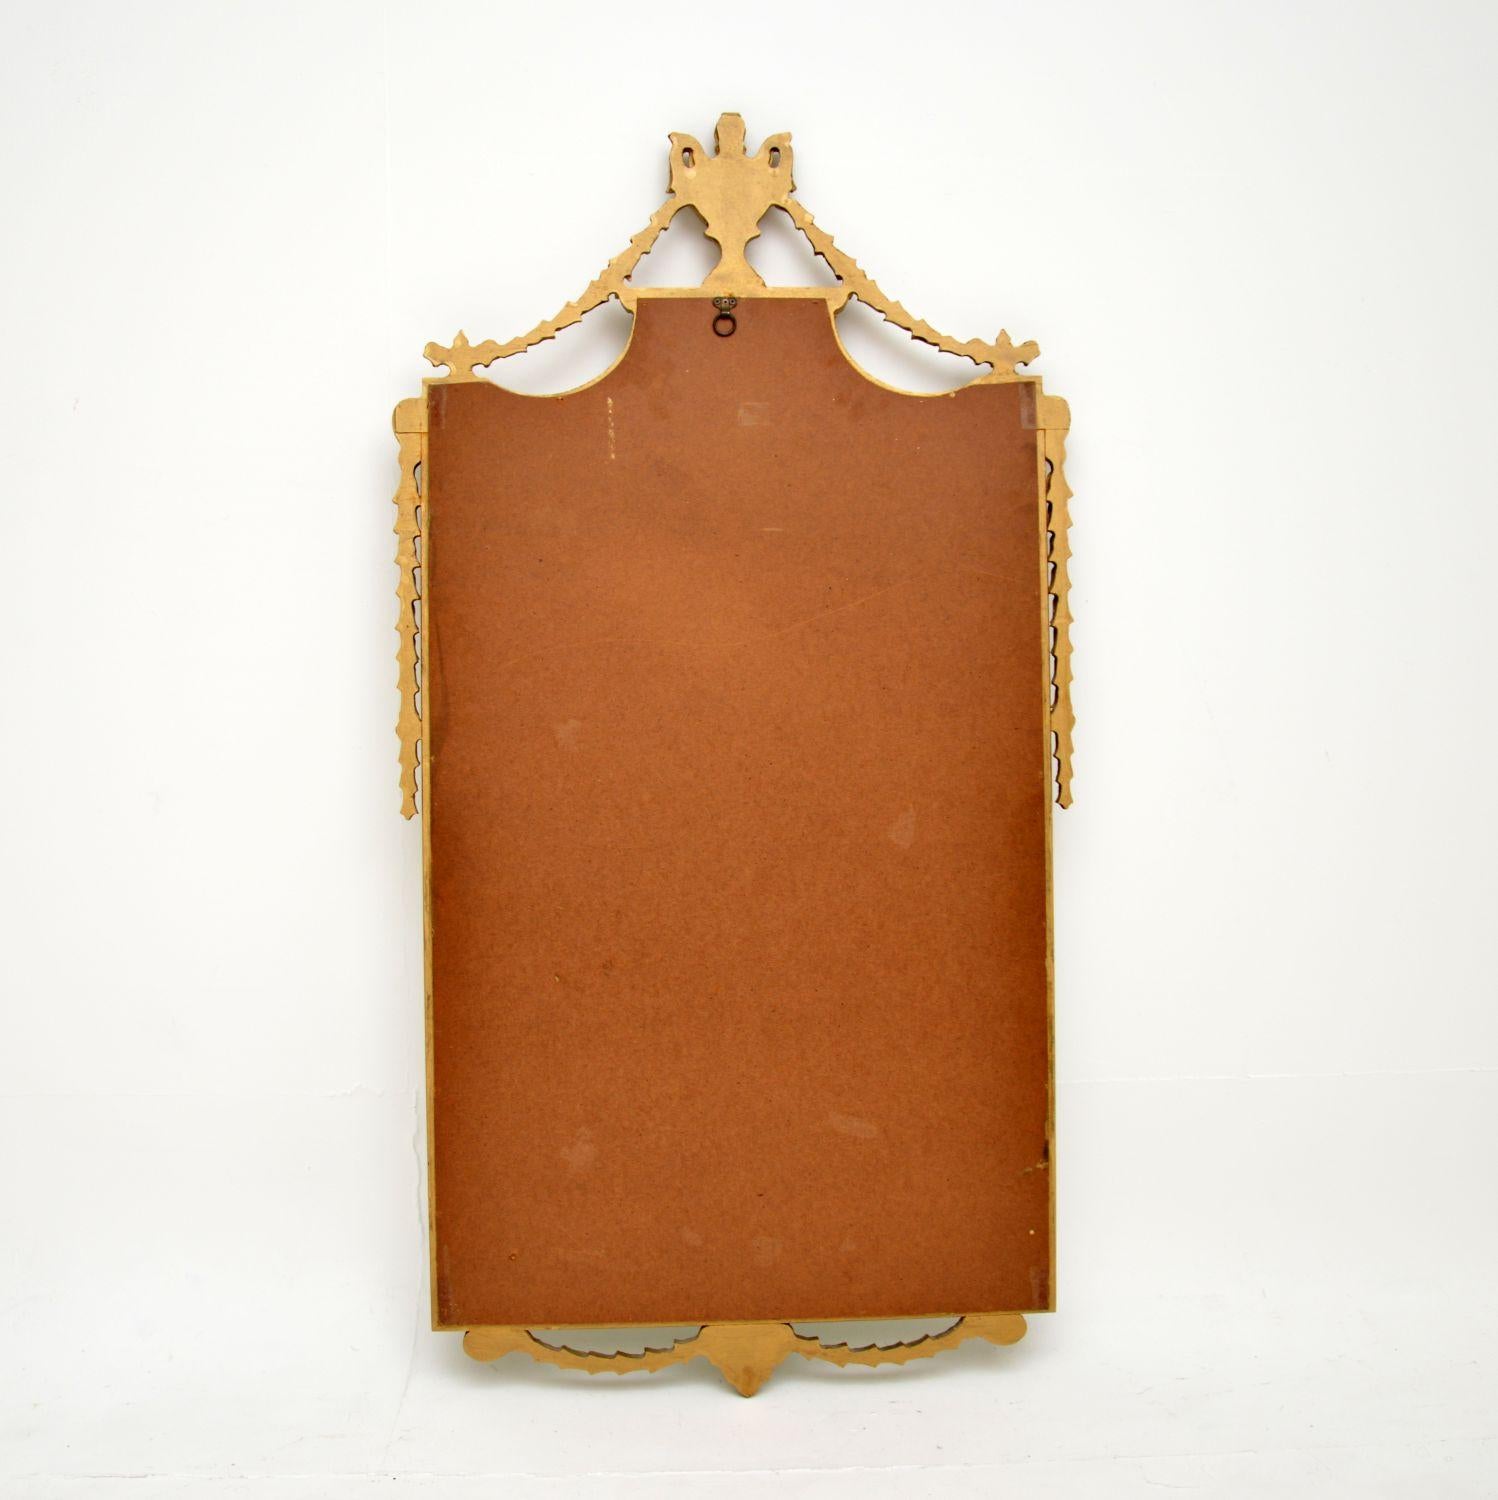 Magnifique miroir ancien en bois doré. Fabriqué en France, il date des années 1950.

La qualité est excellente, elle est faite d'une combinaison de bois doré et de gesso. Le cadre est orné de fins détails et la dorure a acquis une belle patine. Le